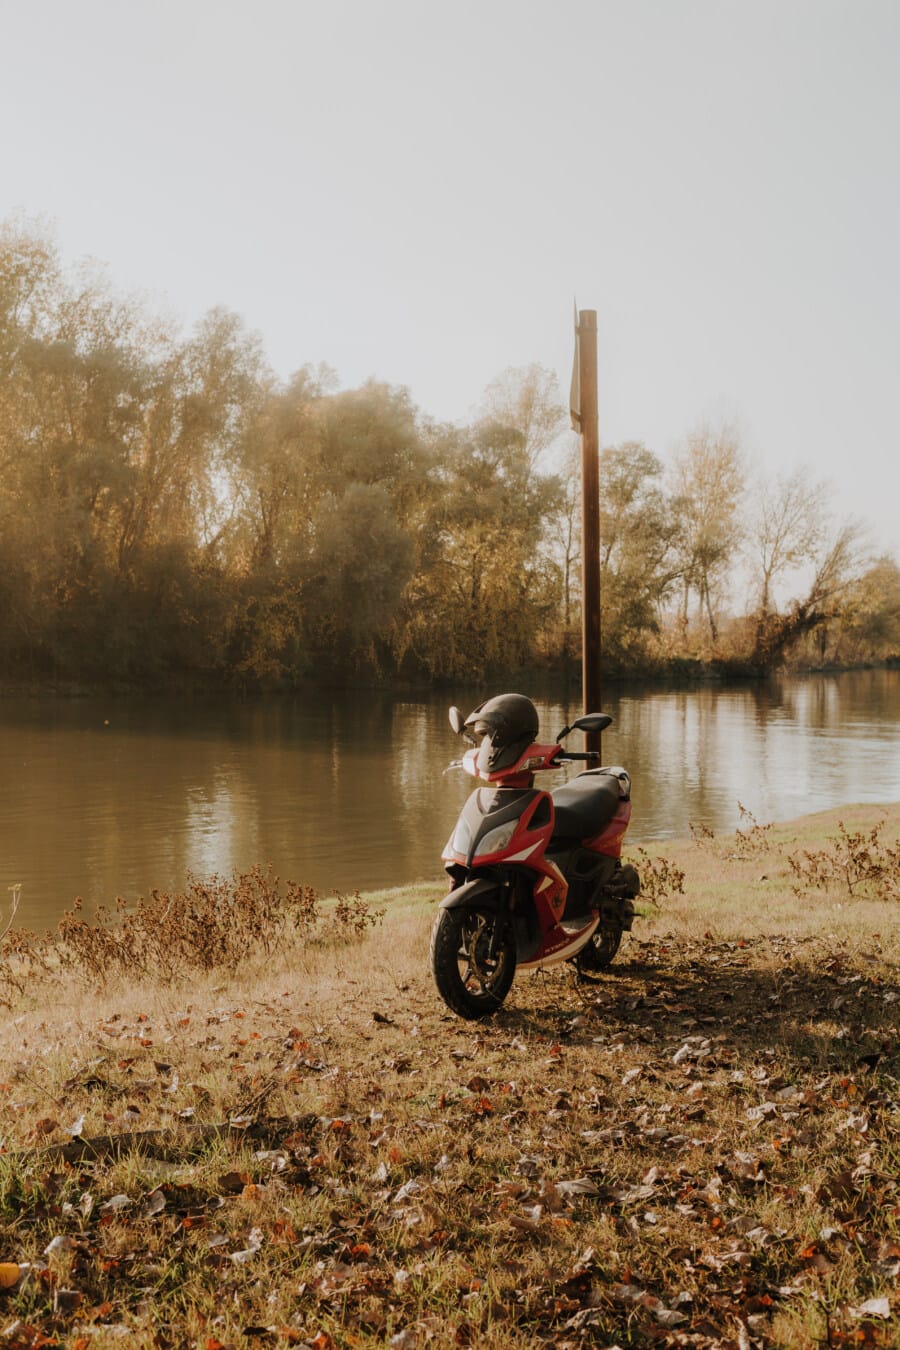 motocikl, minibike, mopeda, jesen, obala rijeke, bicikl, priroda, voda, vozila, na otvorenom